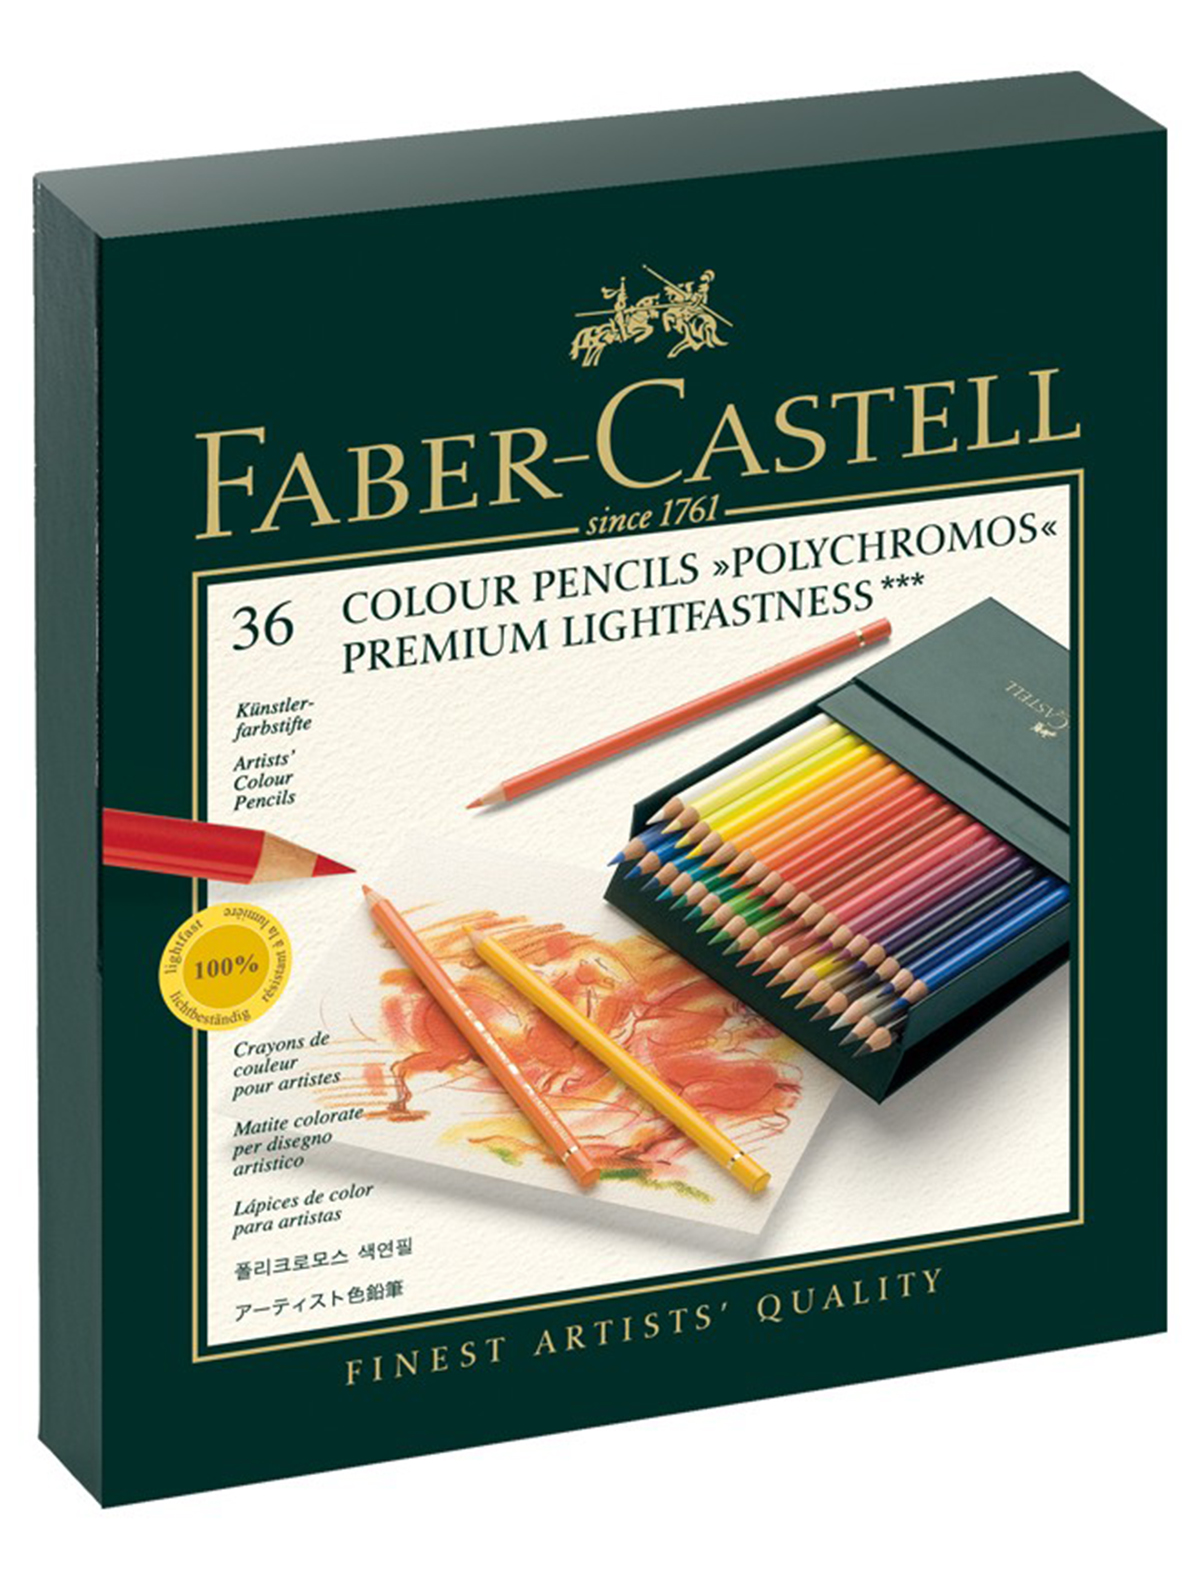 Карандаш Faber-Castell карандаши художественные ные faber castell polychromos® 36 ов в металлической коробке